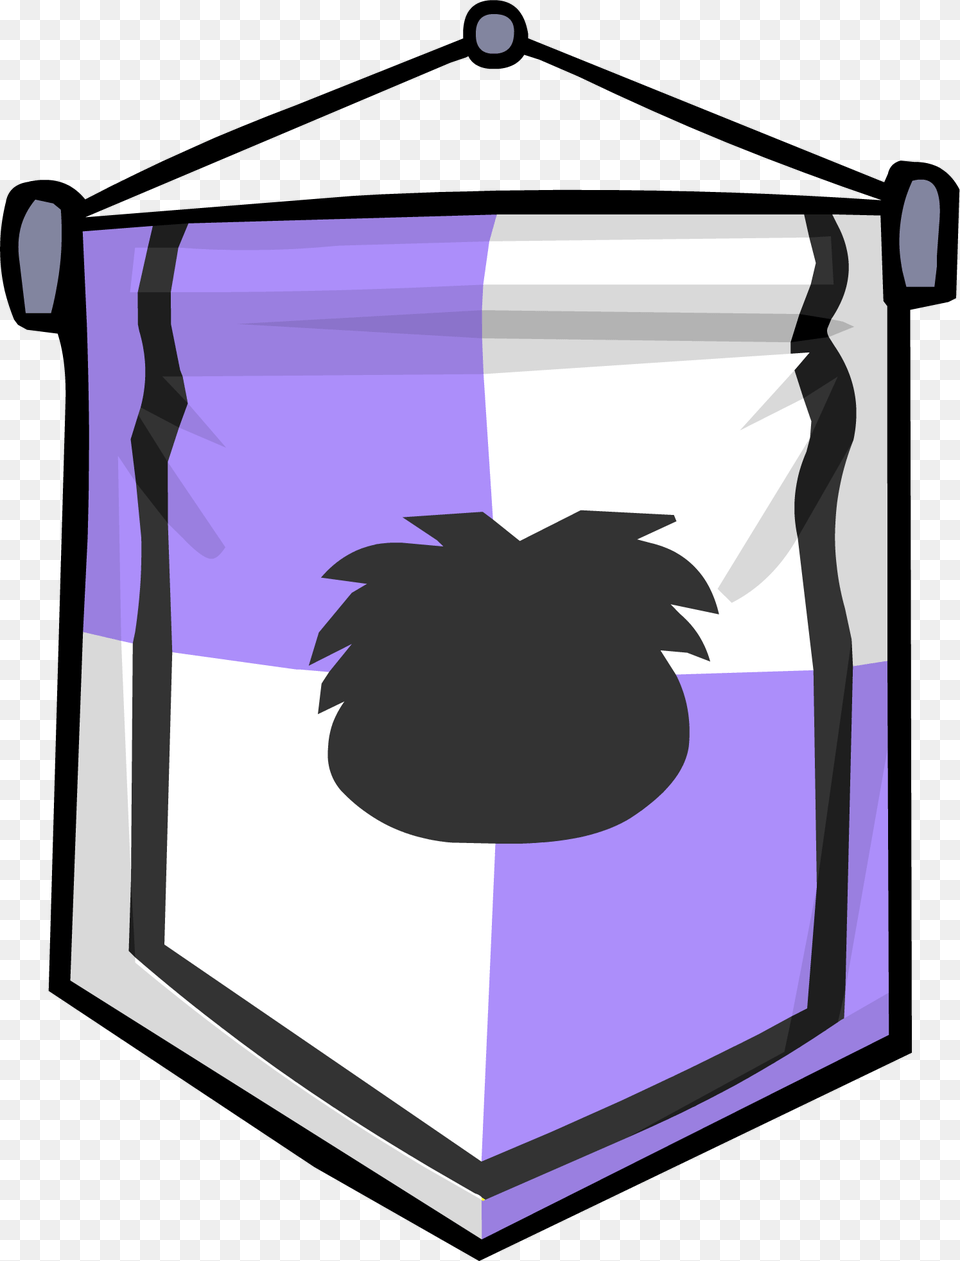 Club Penguin Rewritten Wiki, Armor, Emblem, Smoke Pipe, Symbol Free Transparent Png